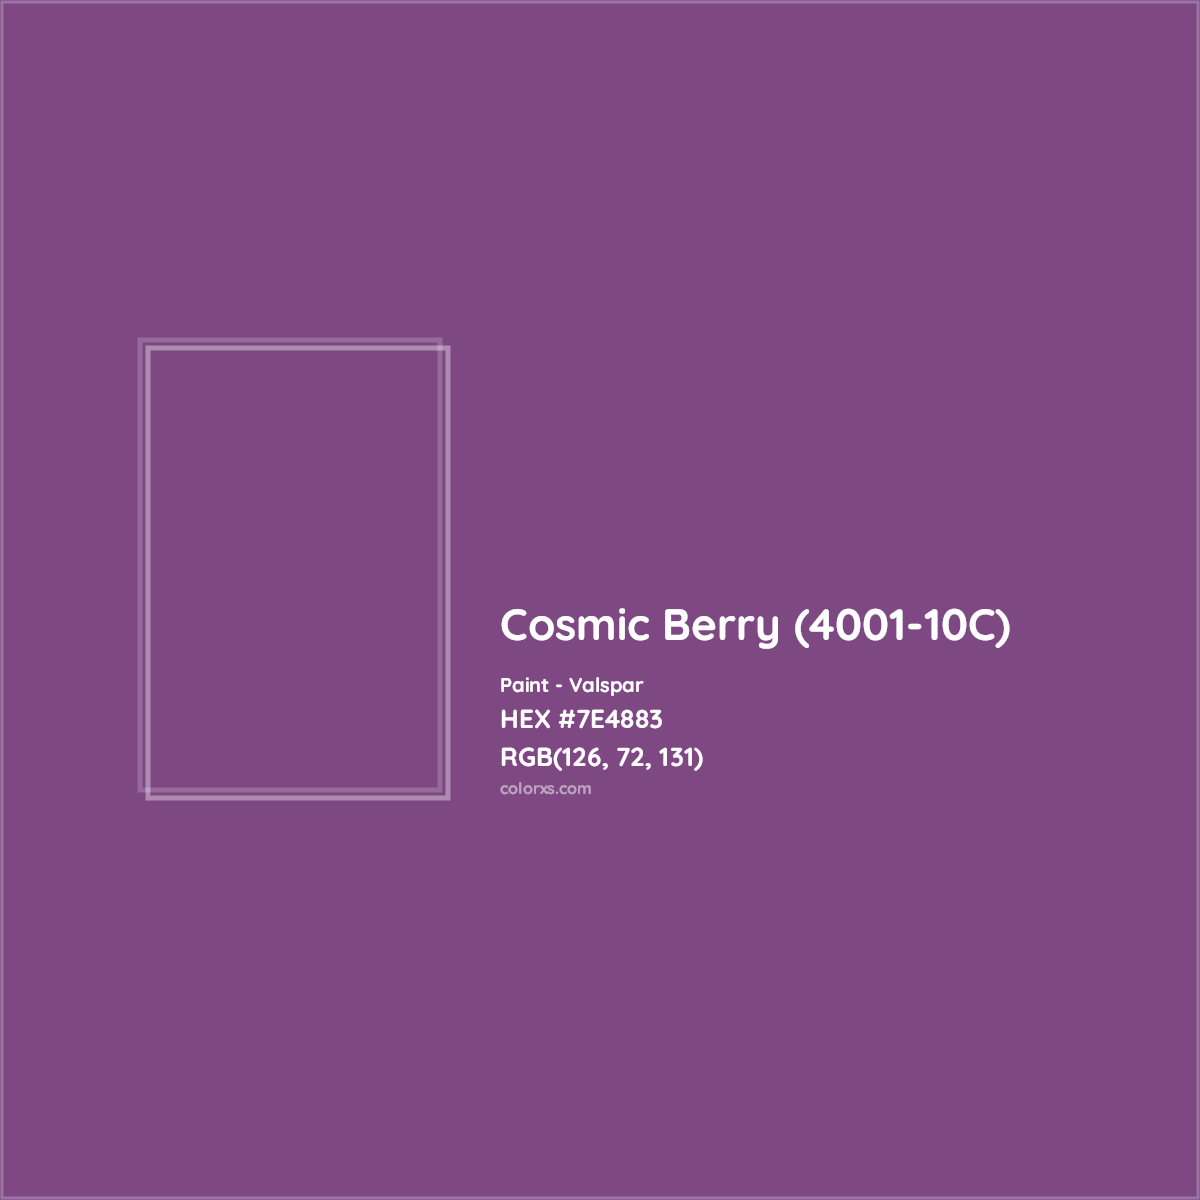 HEX #7E4883 Cosmic Berry (4001-10C) Paint Valspar - Color Code